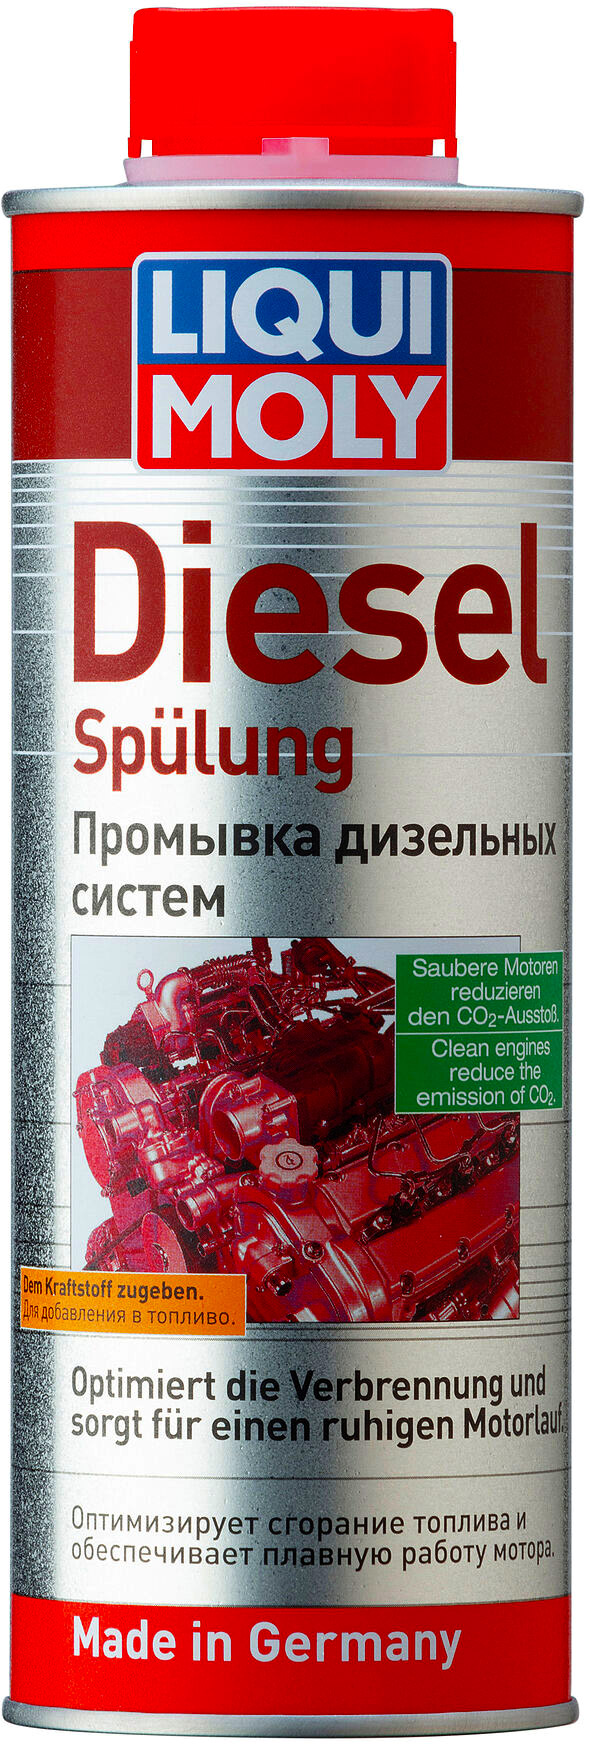 Присадки / Автохимия 2509 Liqui Moly Diesel Spulung Промывка дизельных систем 0.5л